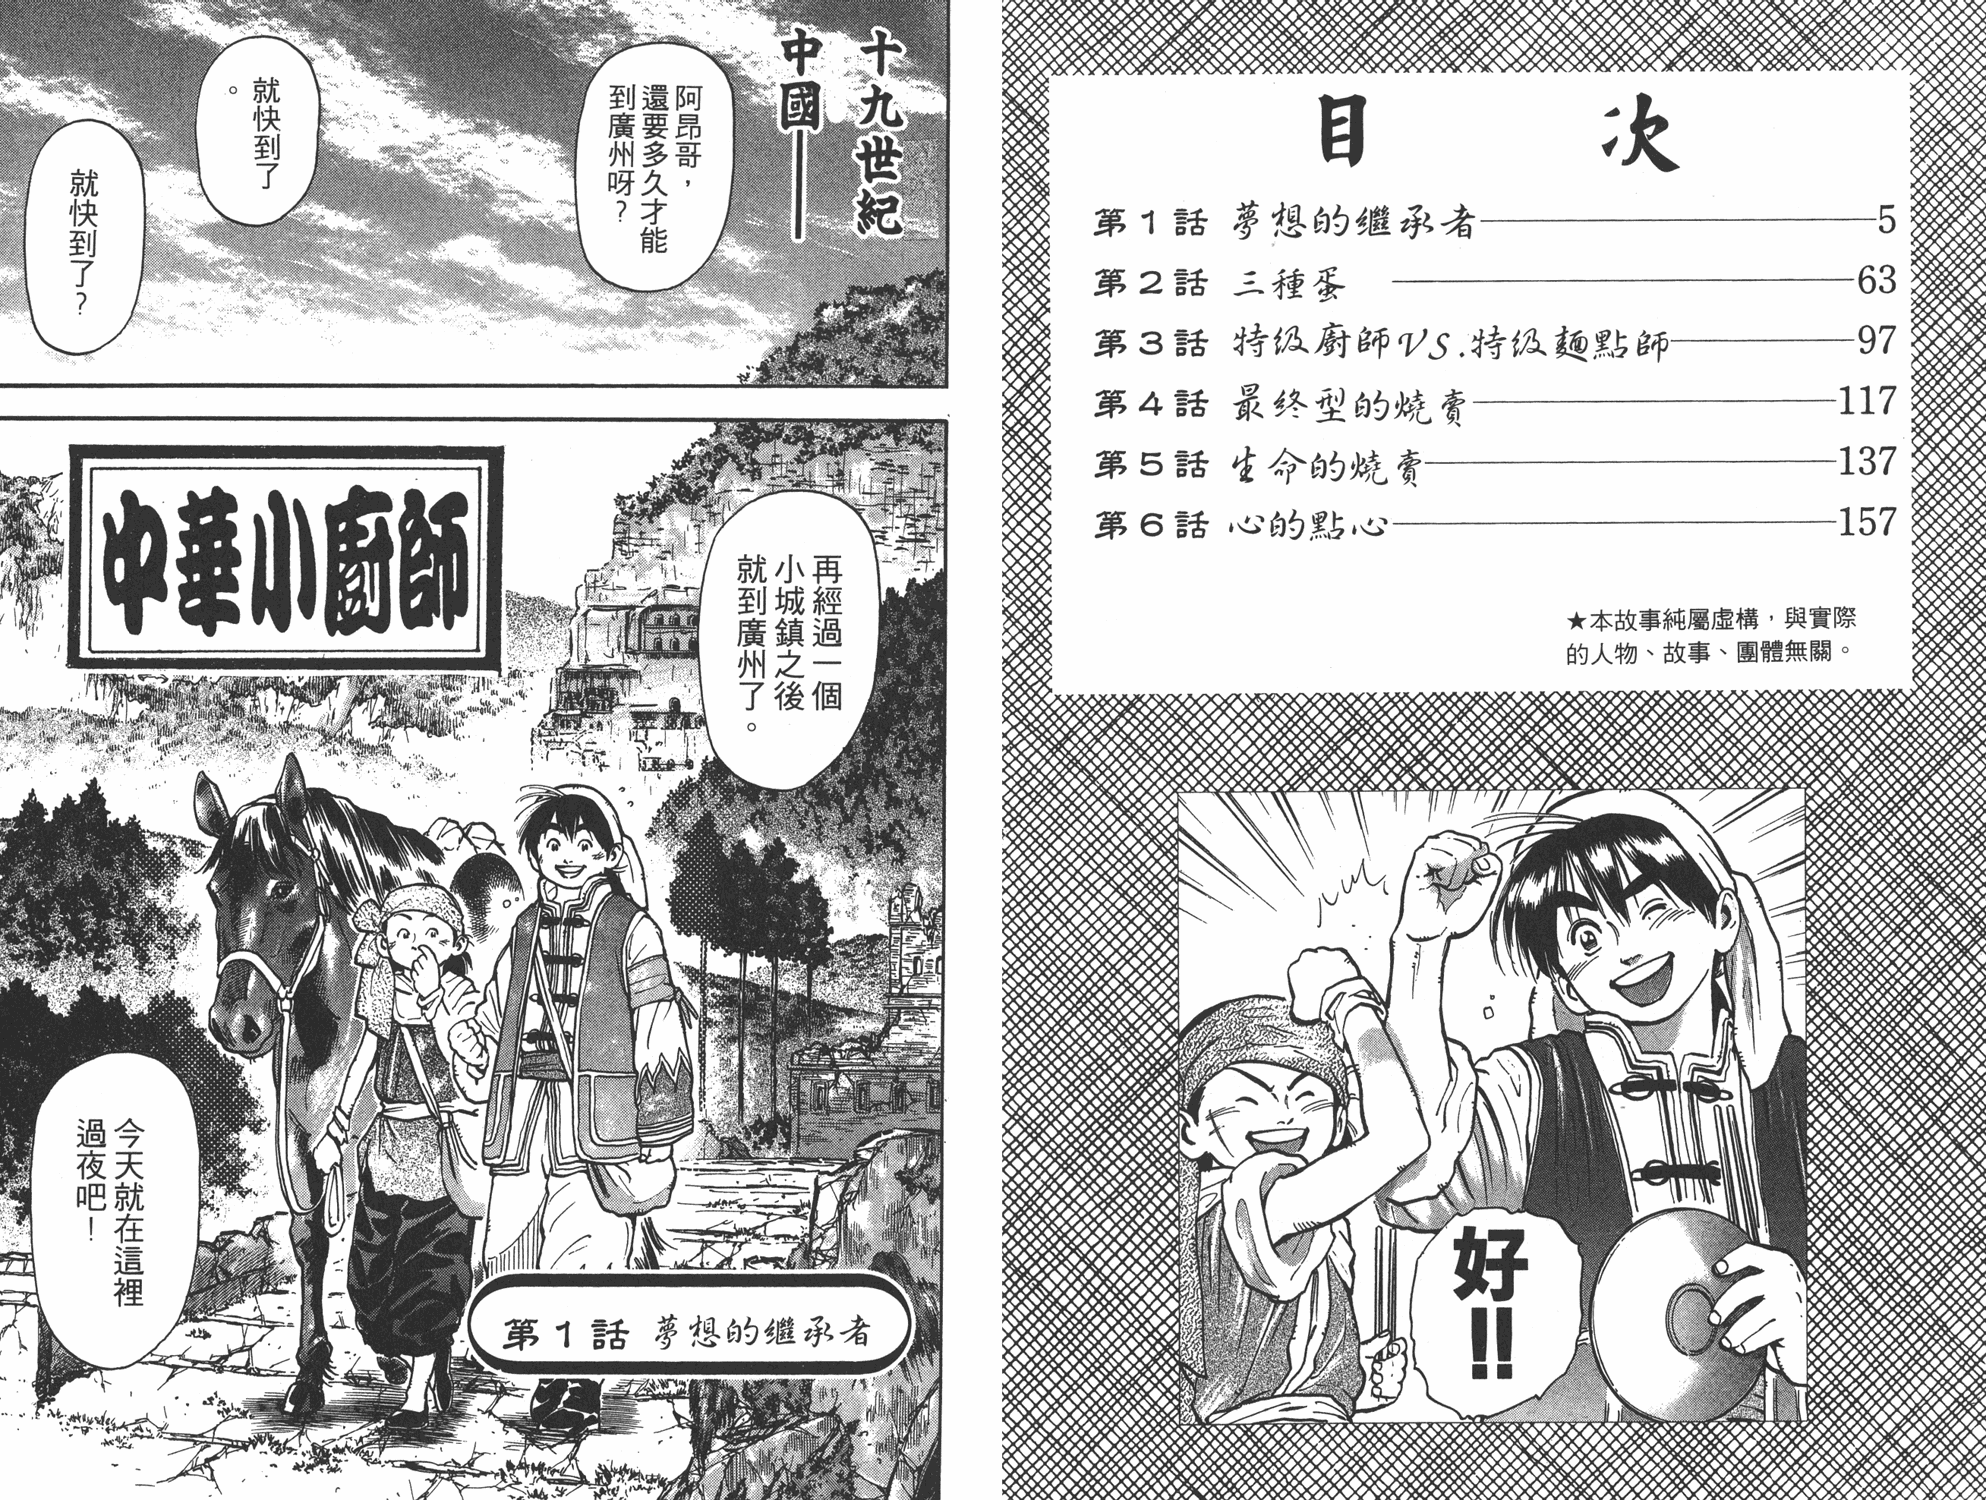 中华小当家第二季国语版全集在线免费观看漫画,第6卷2图